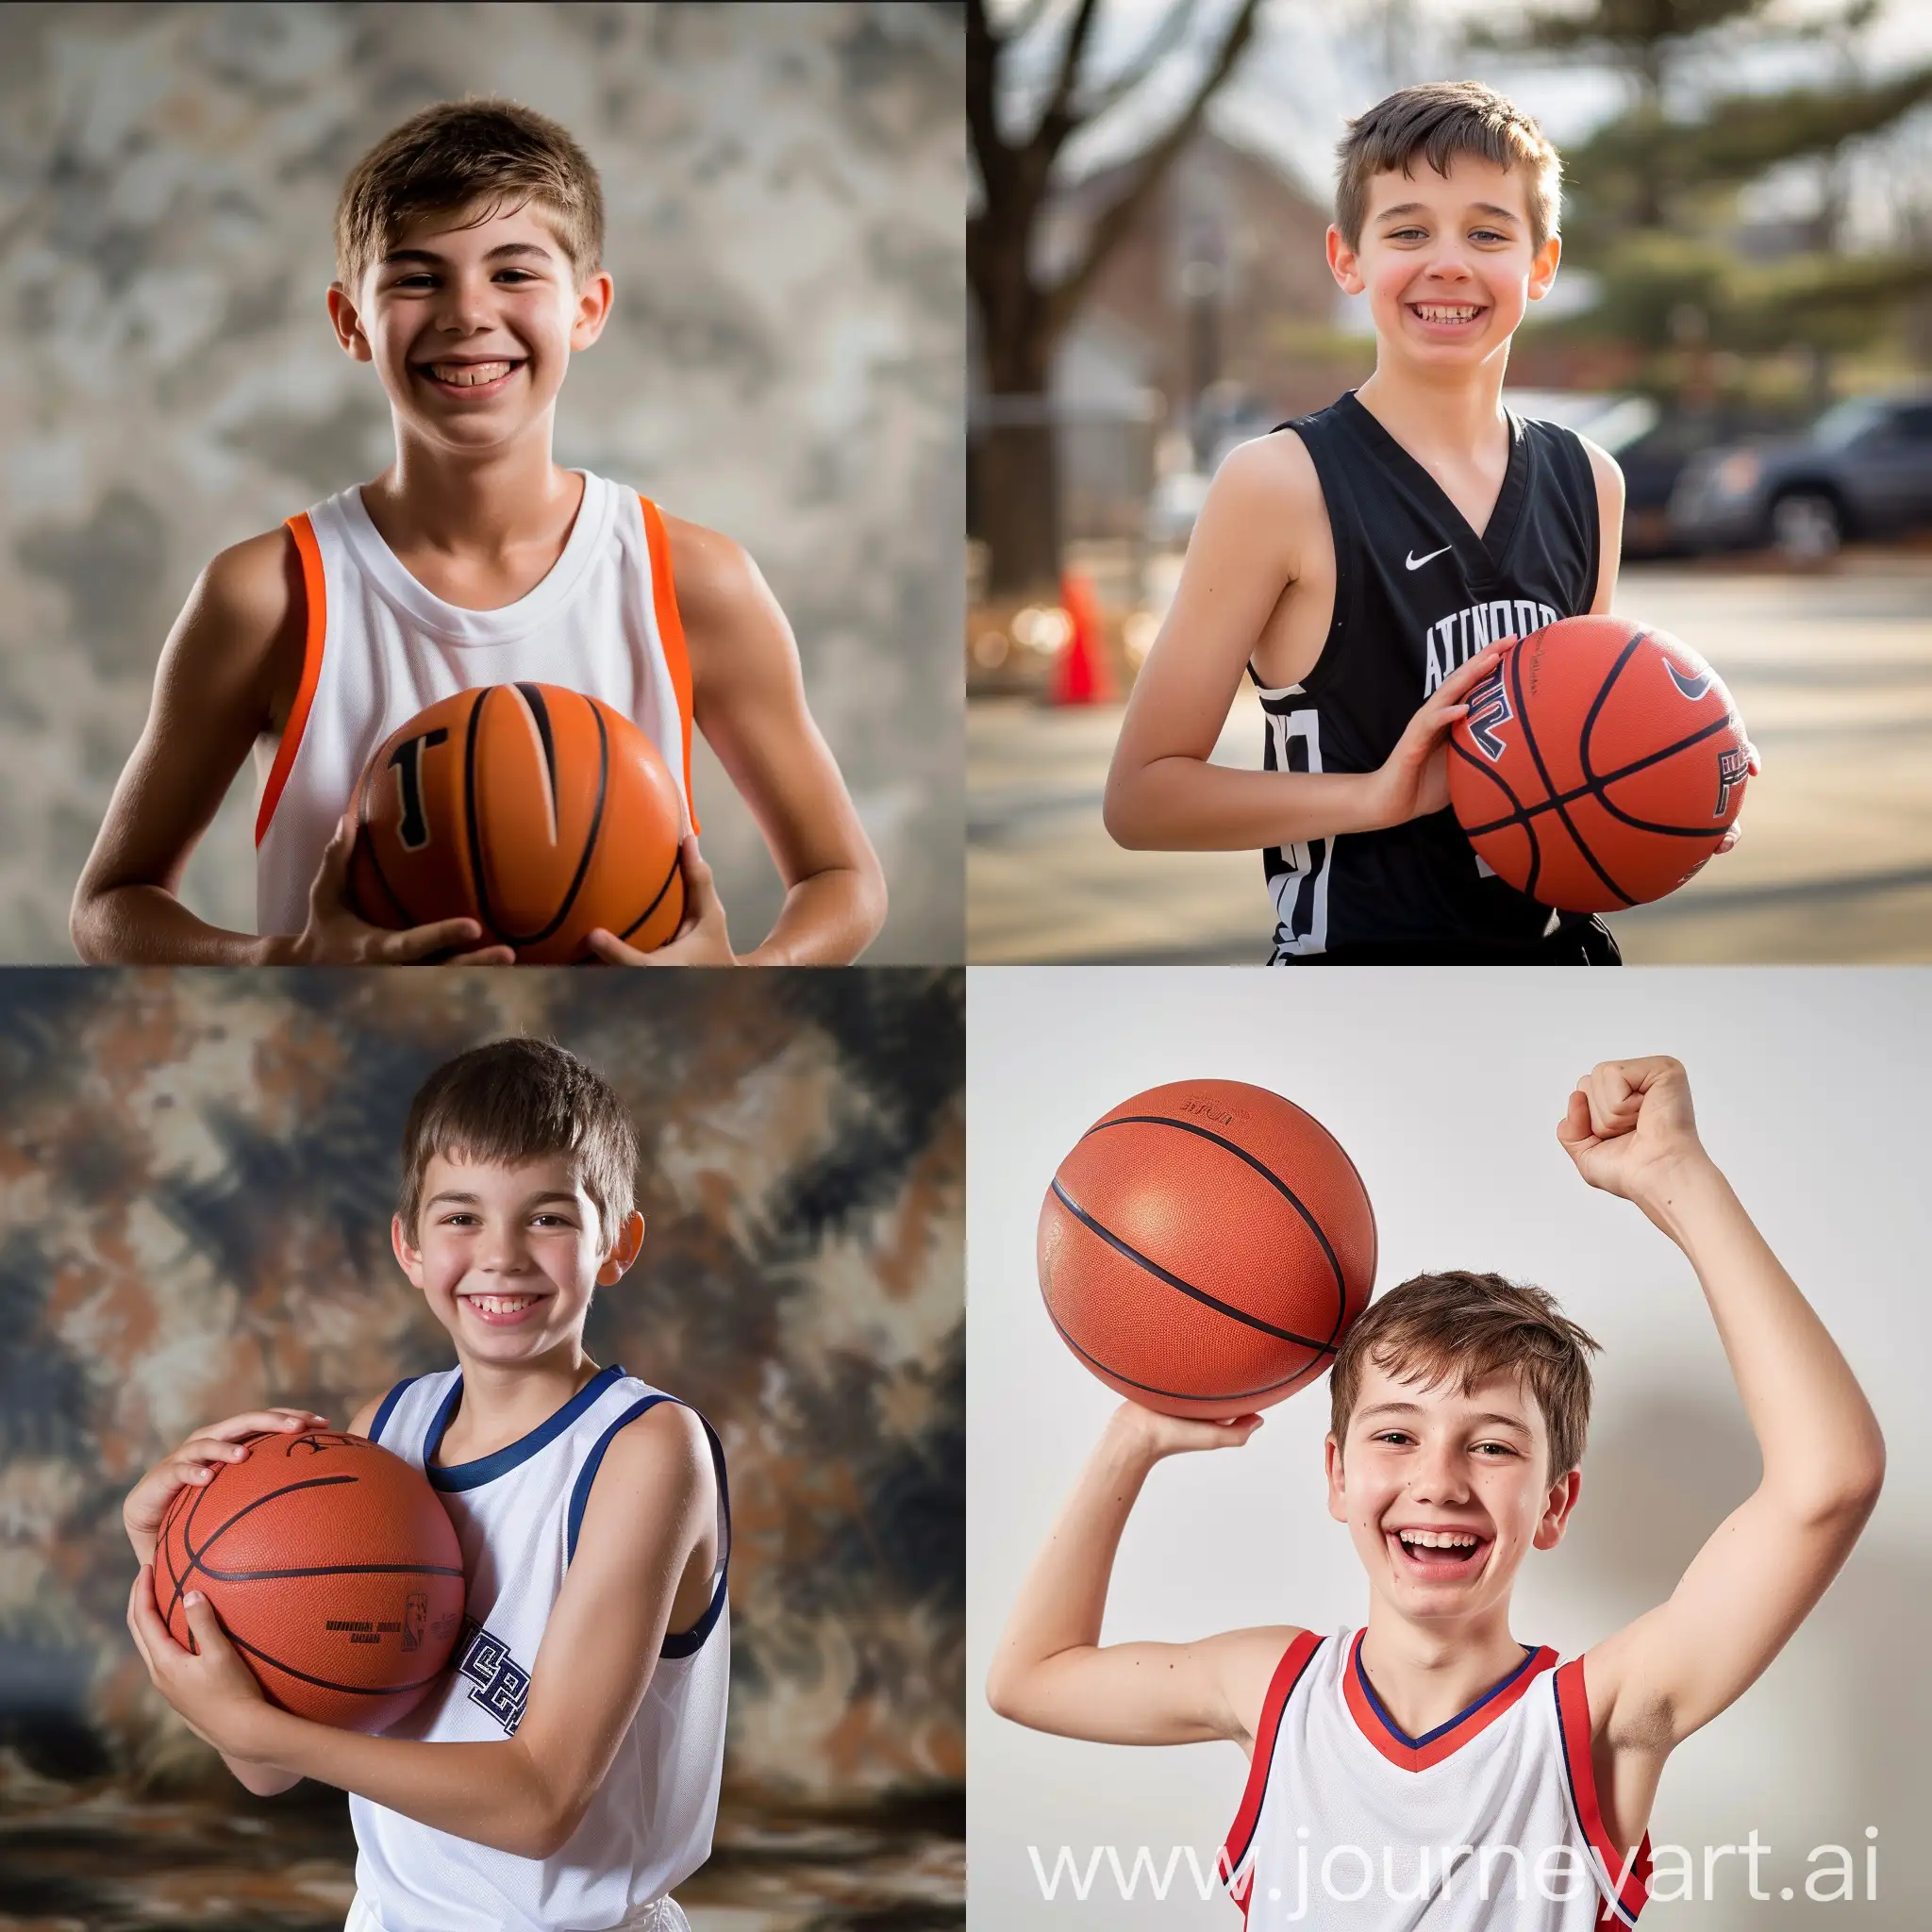 Maak een lentefeest foto voor een 11jarige basketballer